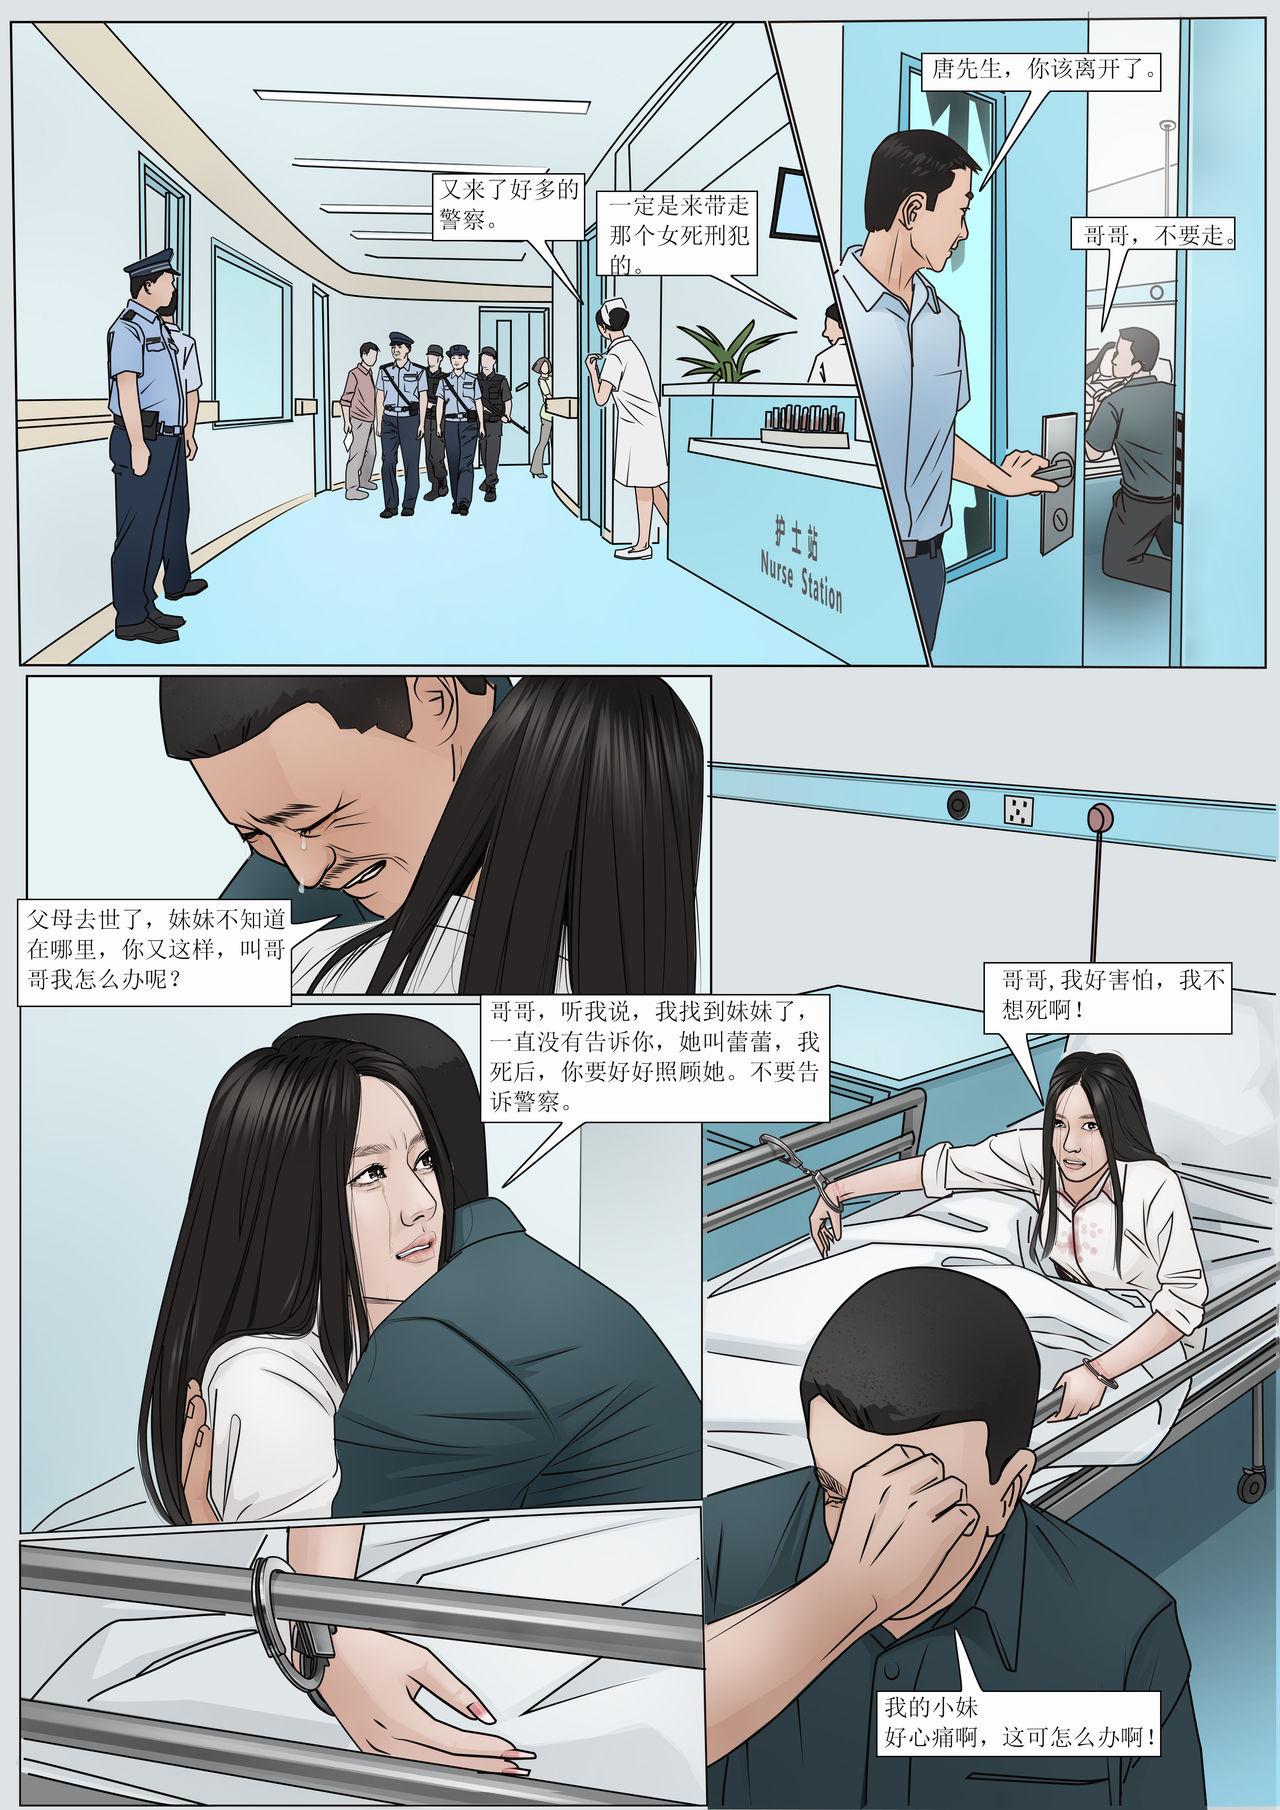 Novinha 枫语漫画 Foryou 《极度重犯》第九话 Three Female Prisoners 9 Chinese Moan - Page 11